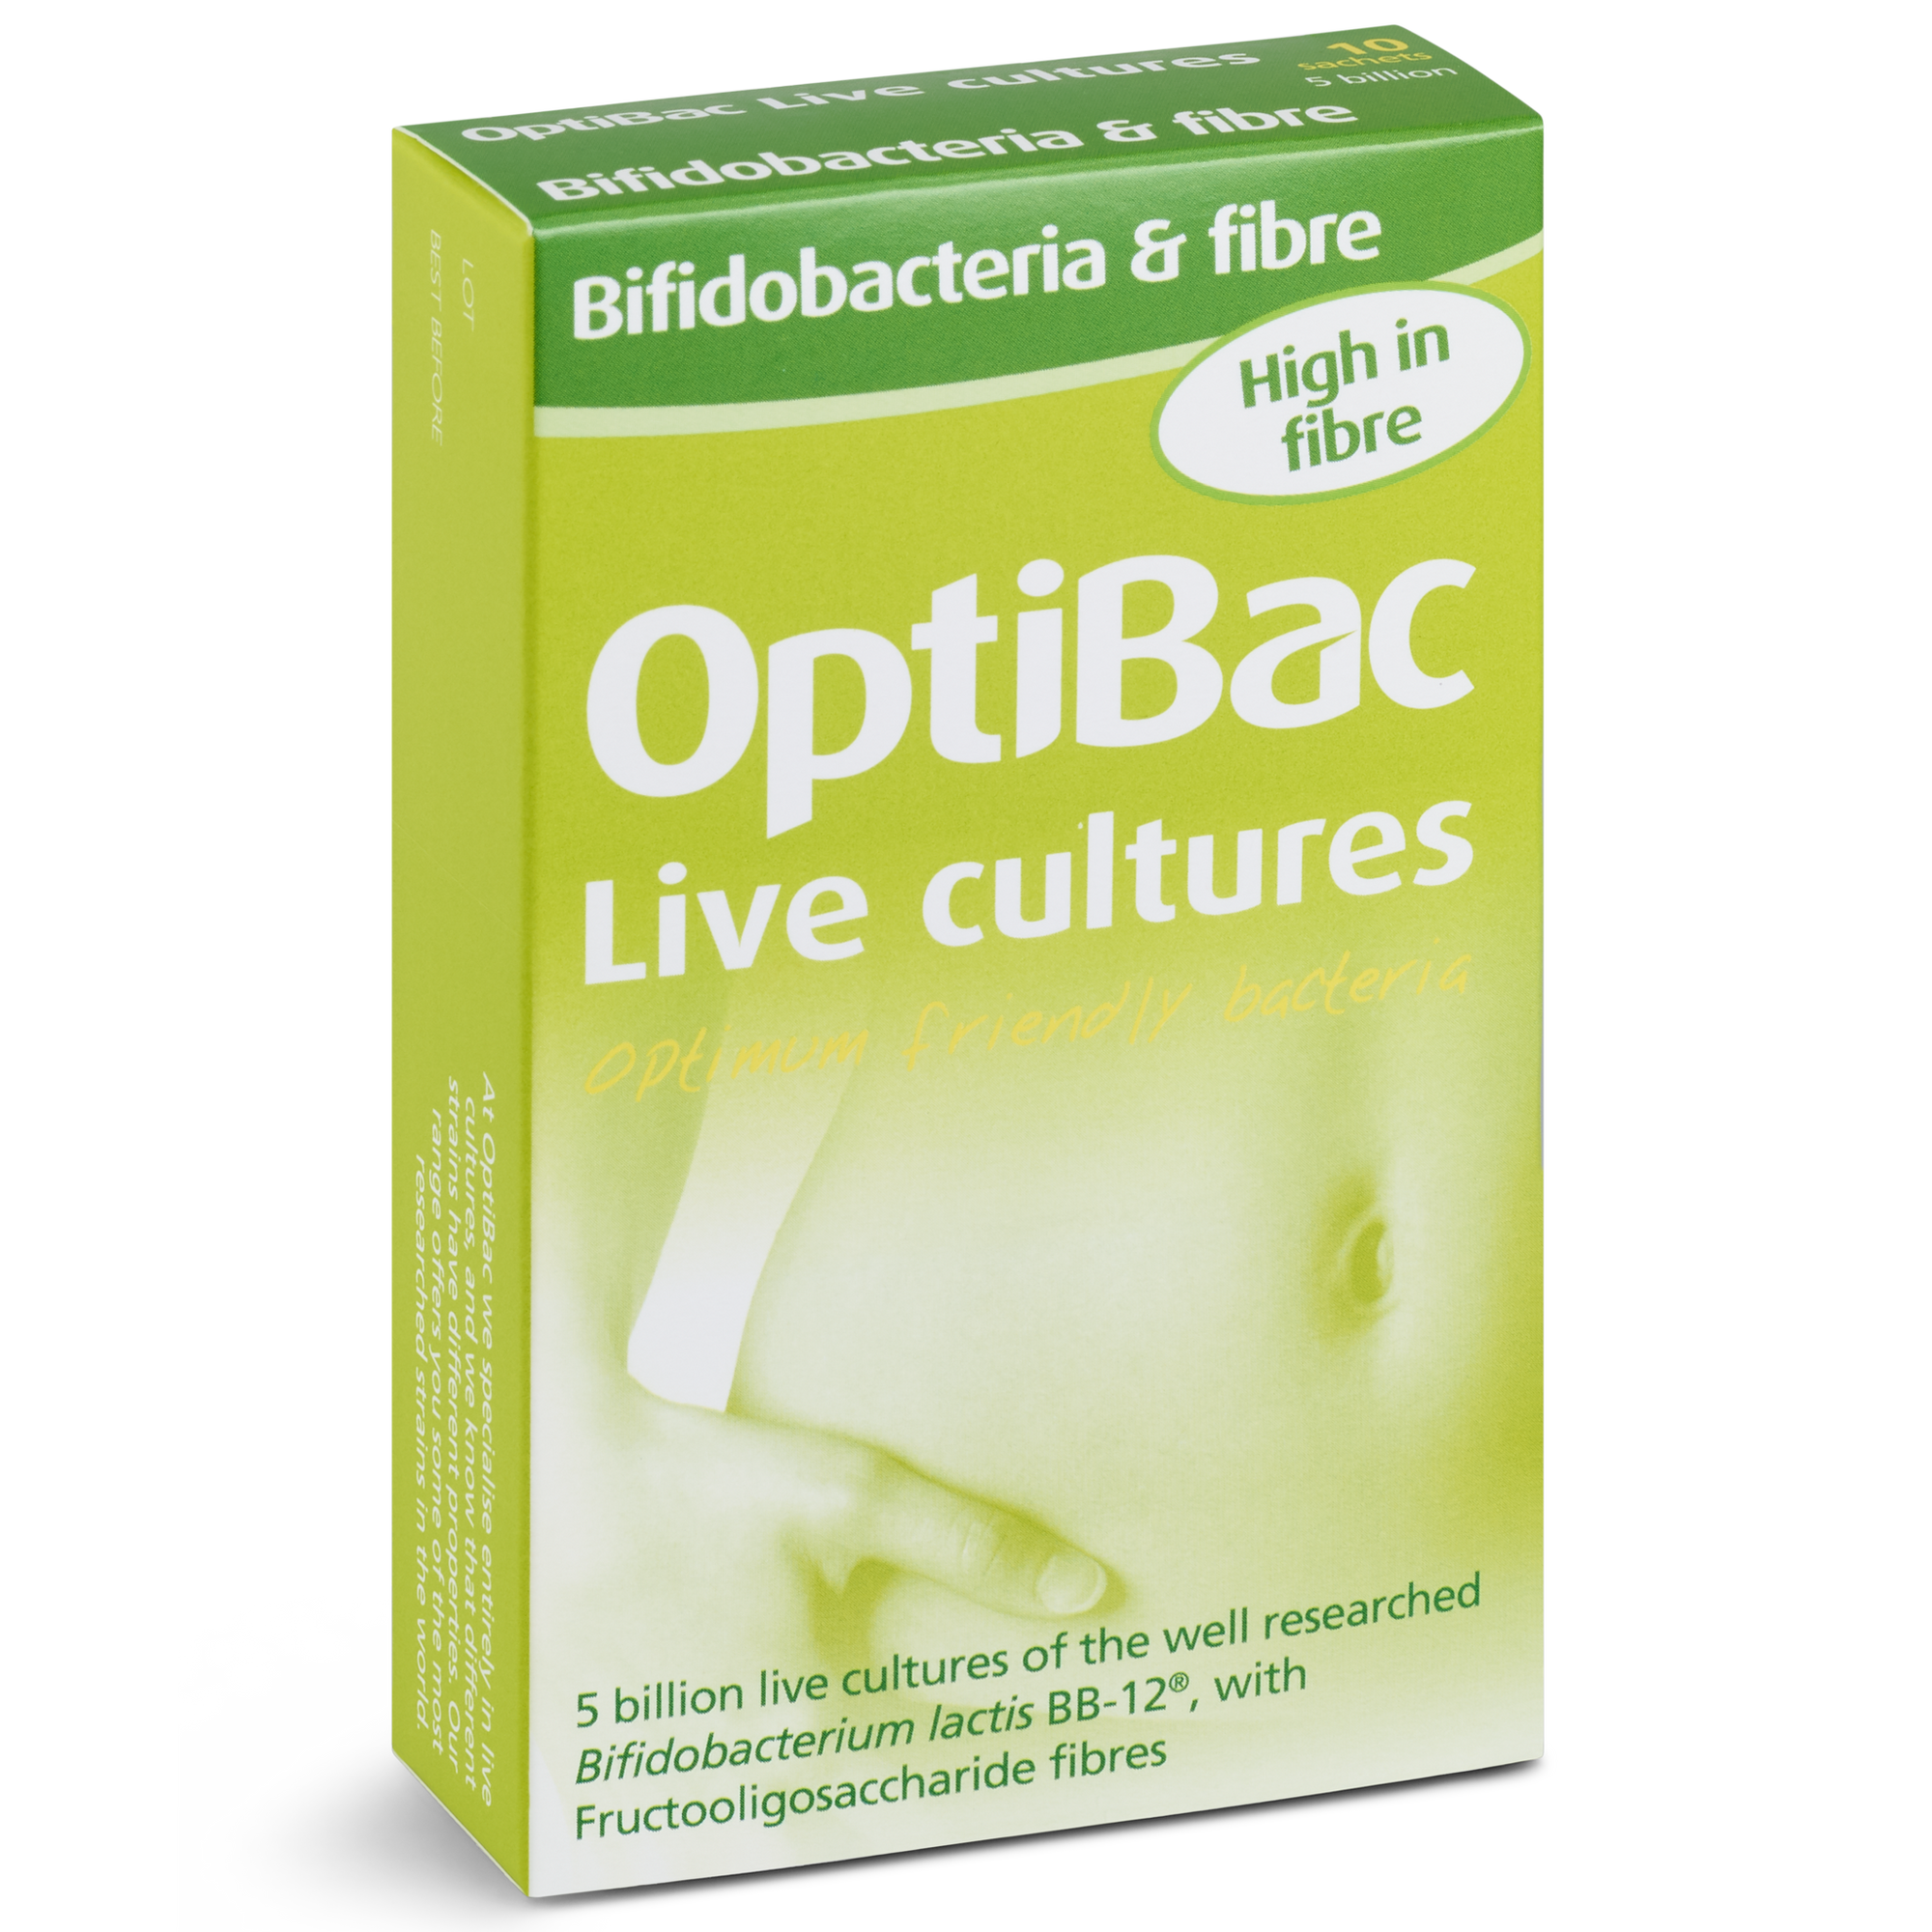 OPTIBAC probiotics Bifidobacteria & fibre 10 sachets